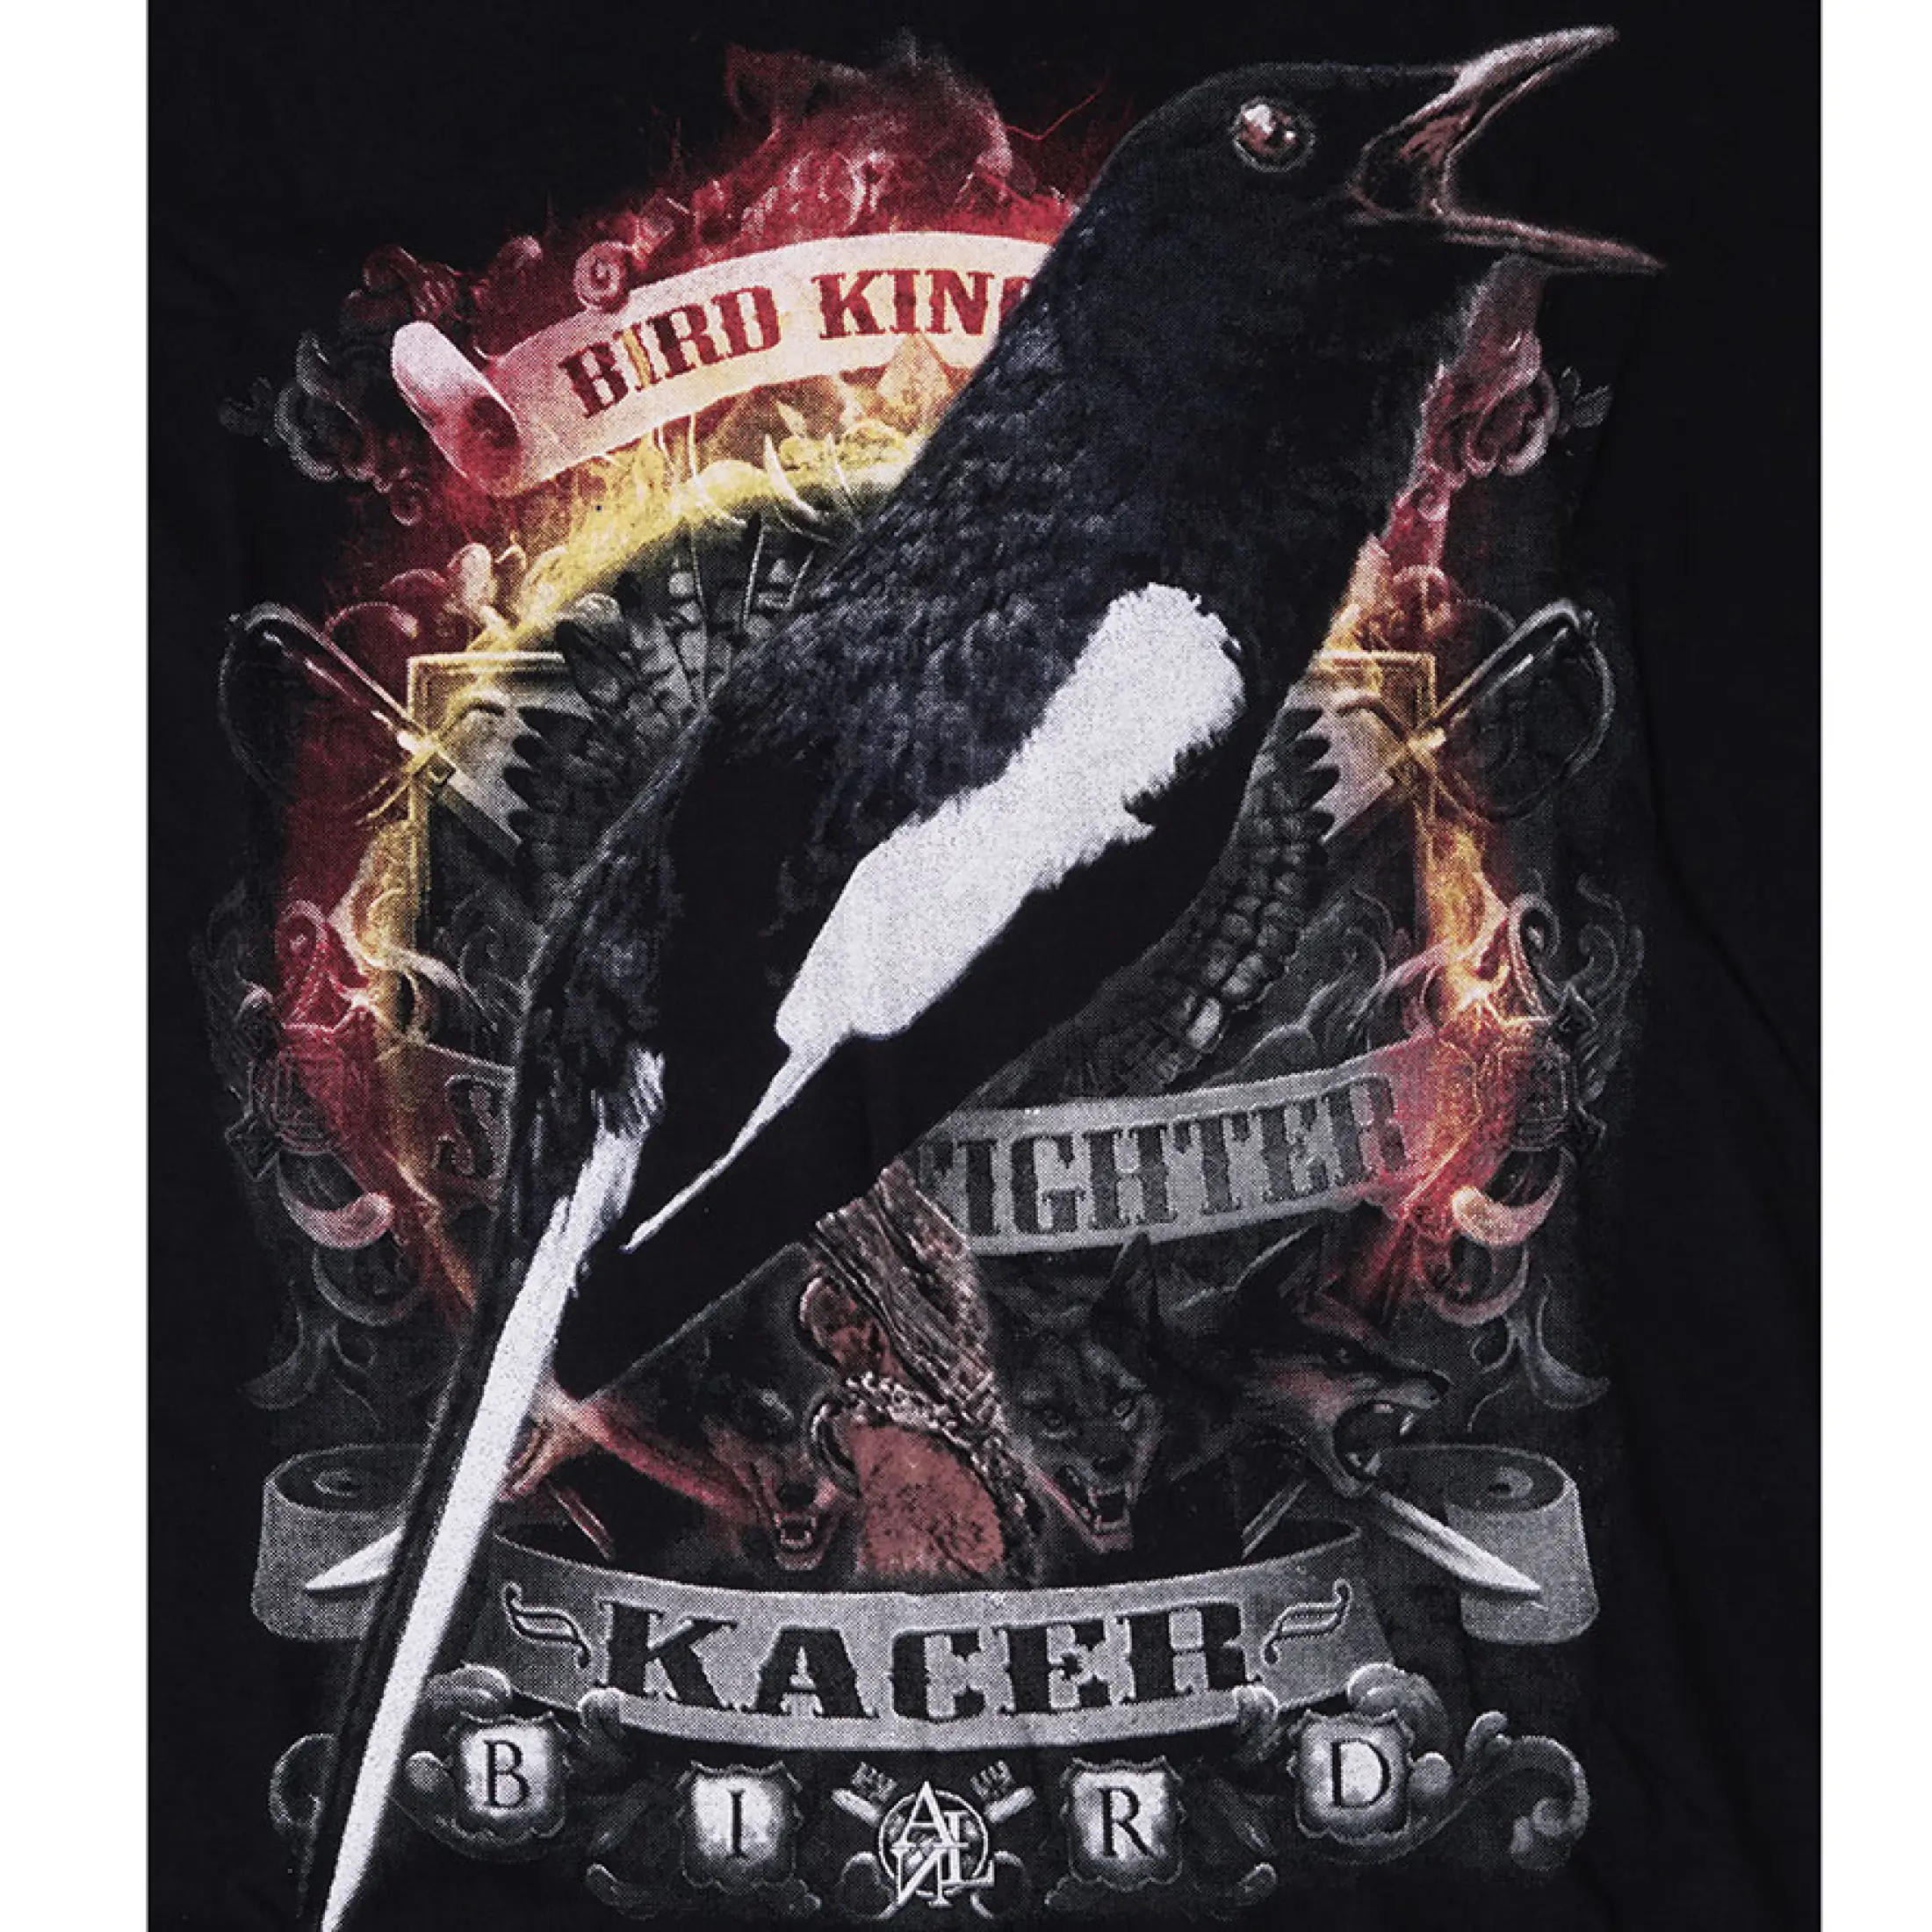 Kaos Burung Kacer Api KC API Kaos Burung Kacer Kaos Jersey Burung Kacer Kaos Burung Kaos Komunitas Burung Kacer Kaos Burung Kacer Kaos Pria Gambar Burung Kaos Gambar Burung Kacer Kaos Burung Kacer